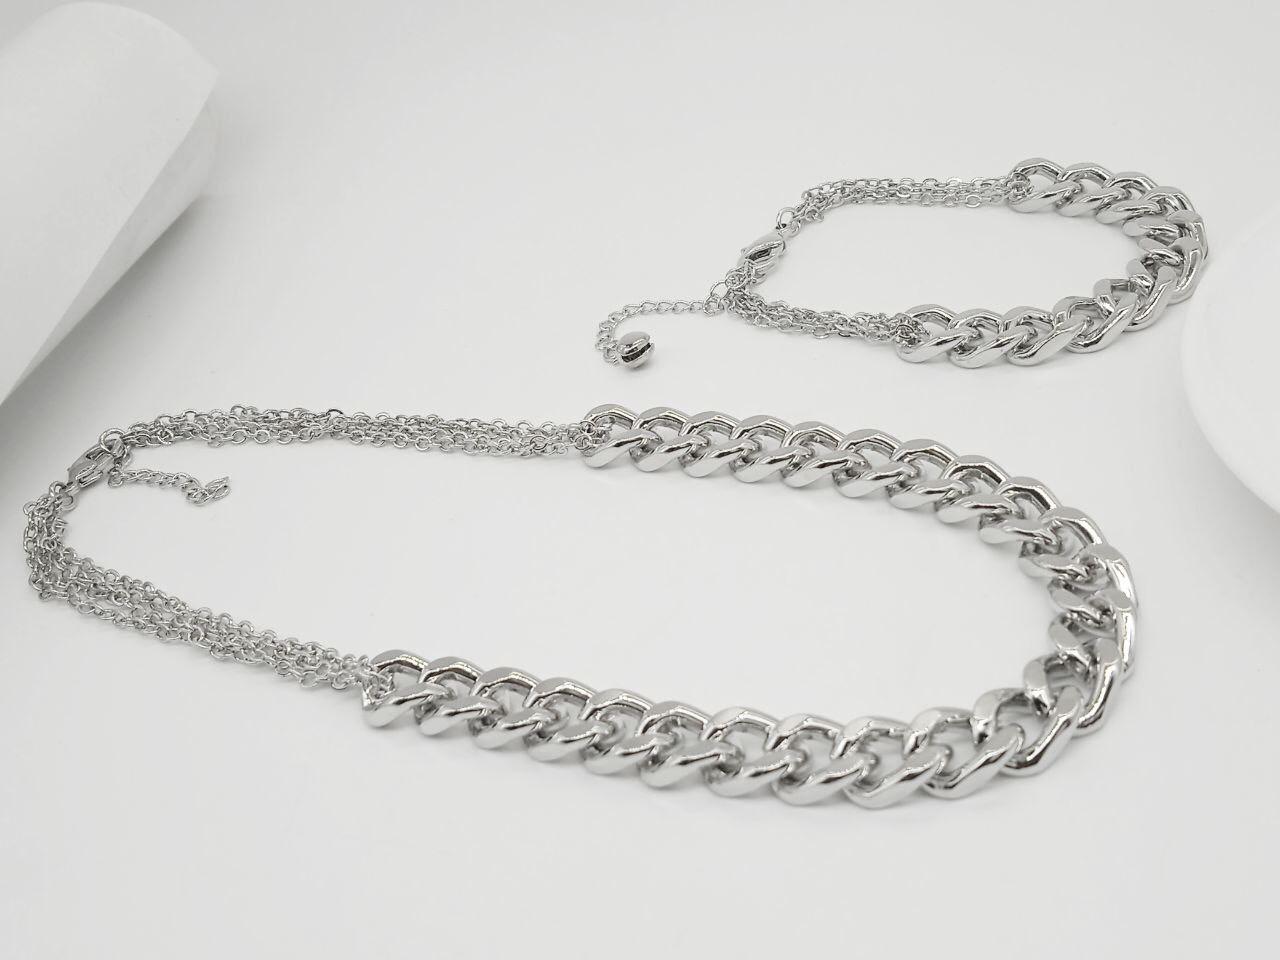 Bracelet+Necklace